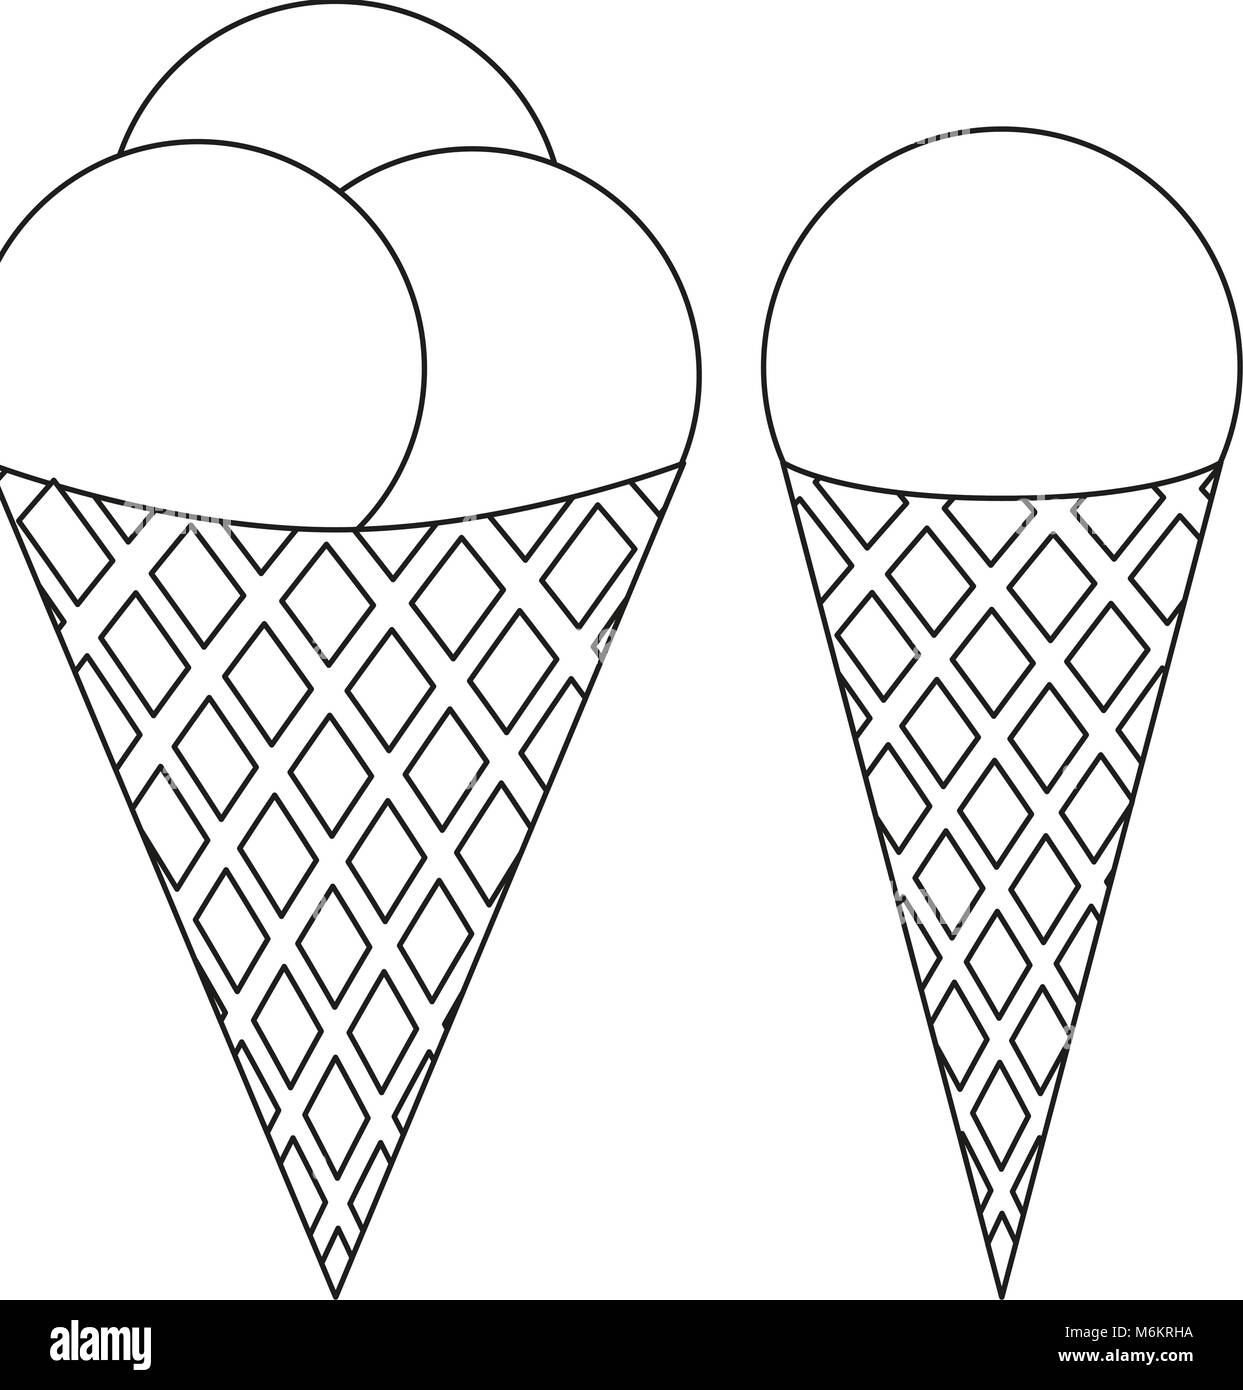 Ice cream ball cone noir et blanc icon set. La page de coloriage pour adultes et enfants. Fast food de l'été illustration vectorielle de la carte cadeau, flyer, certi Illustration de Vecteur